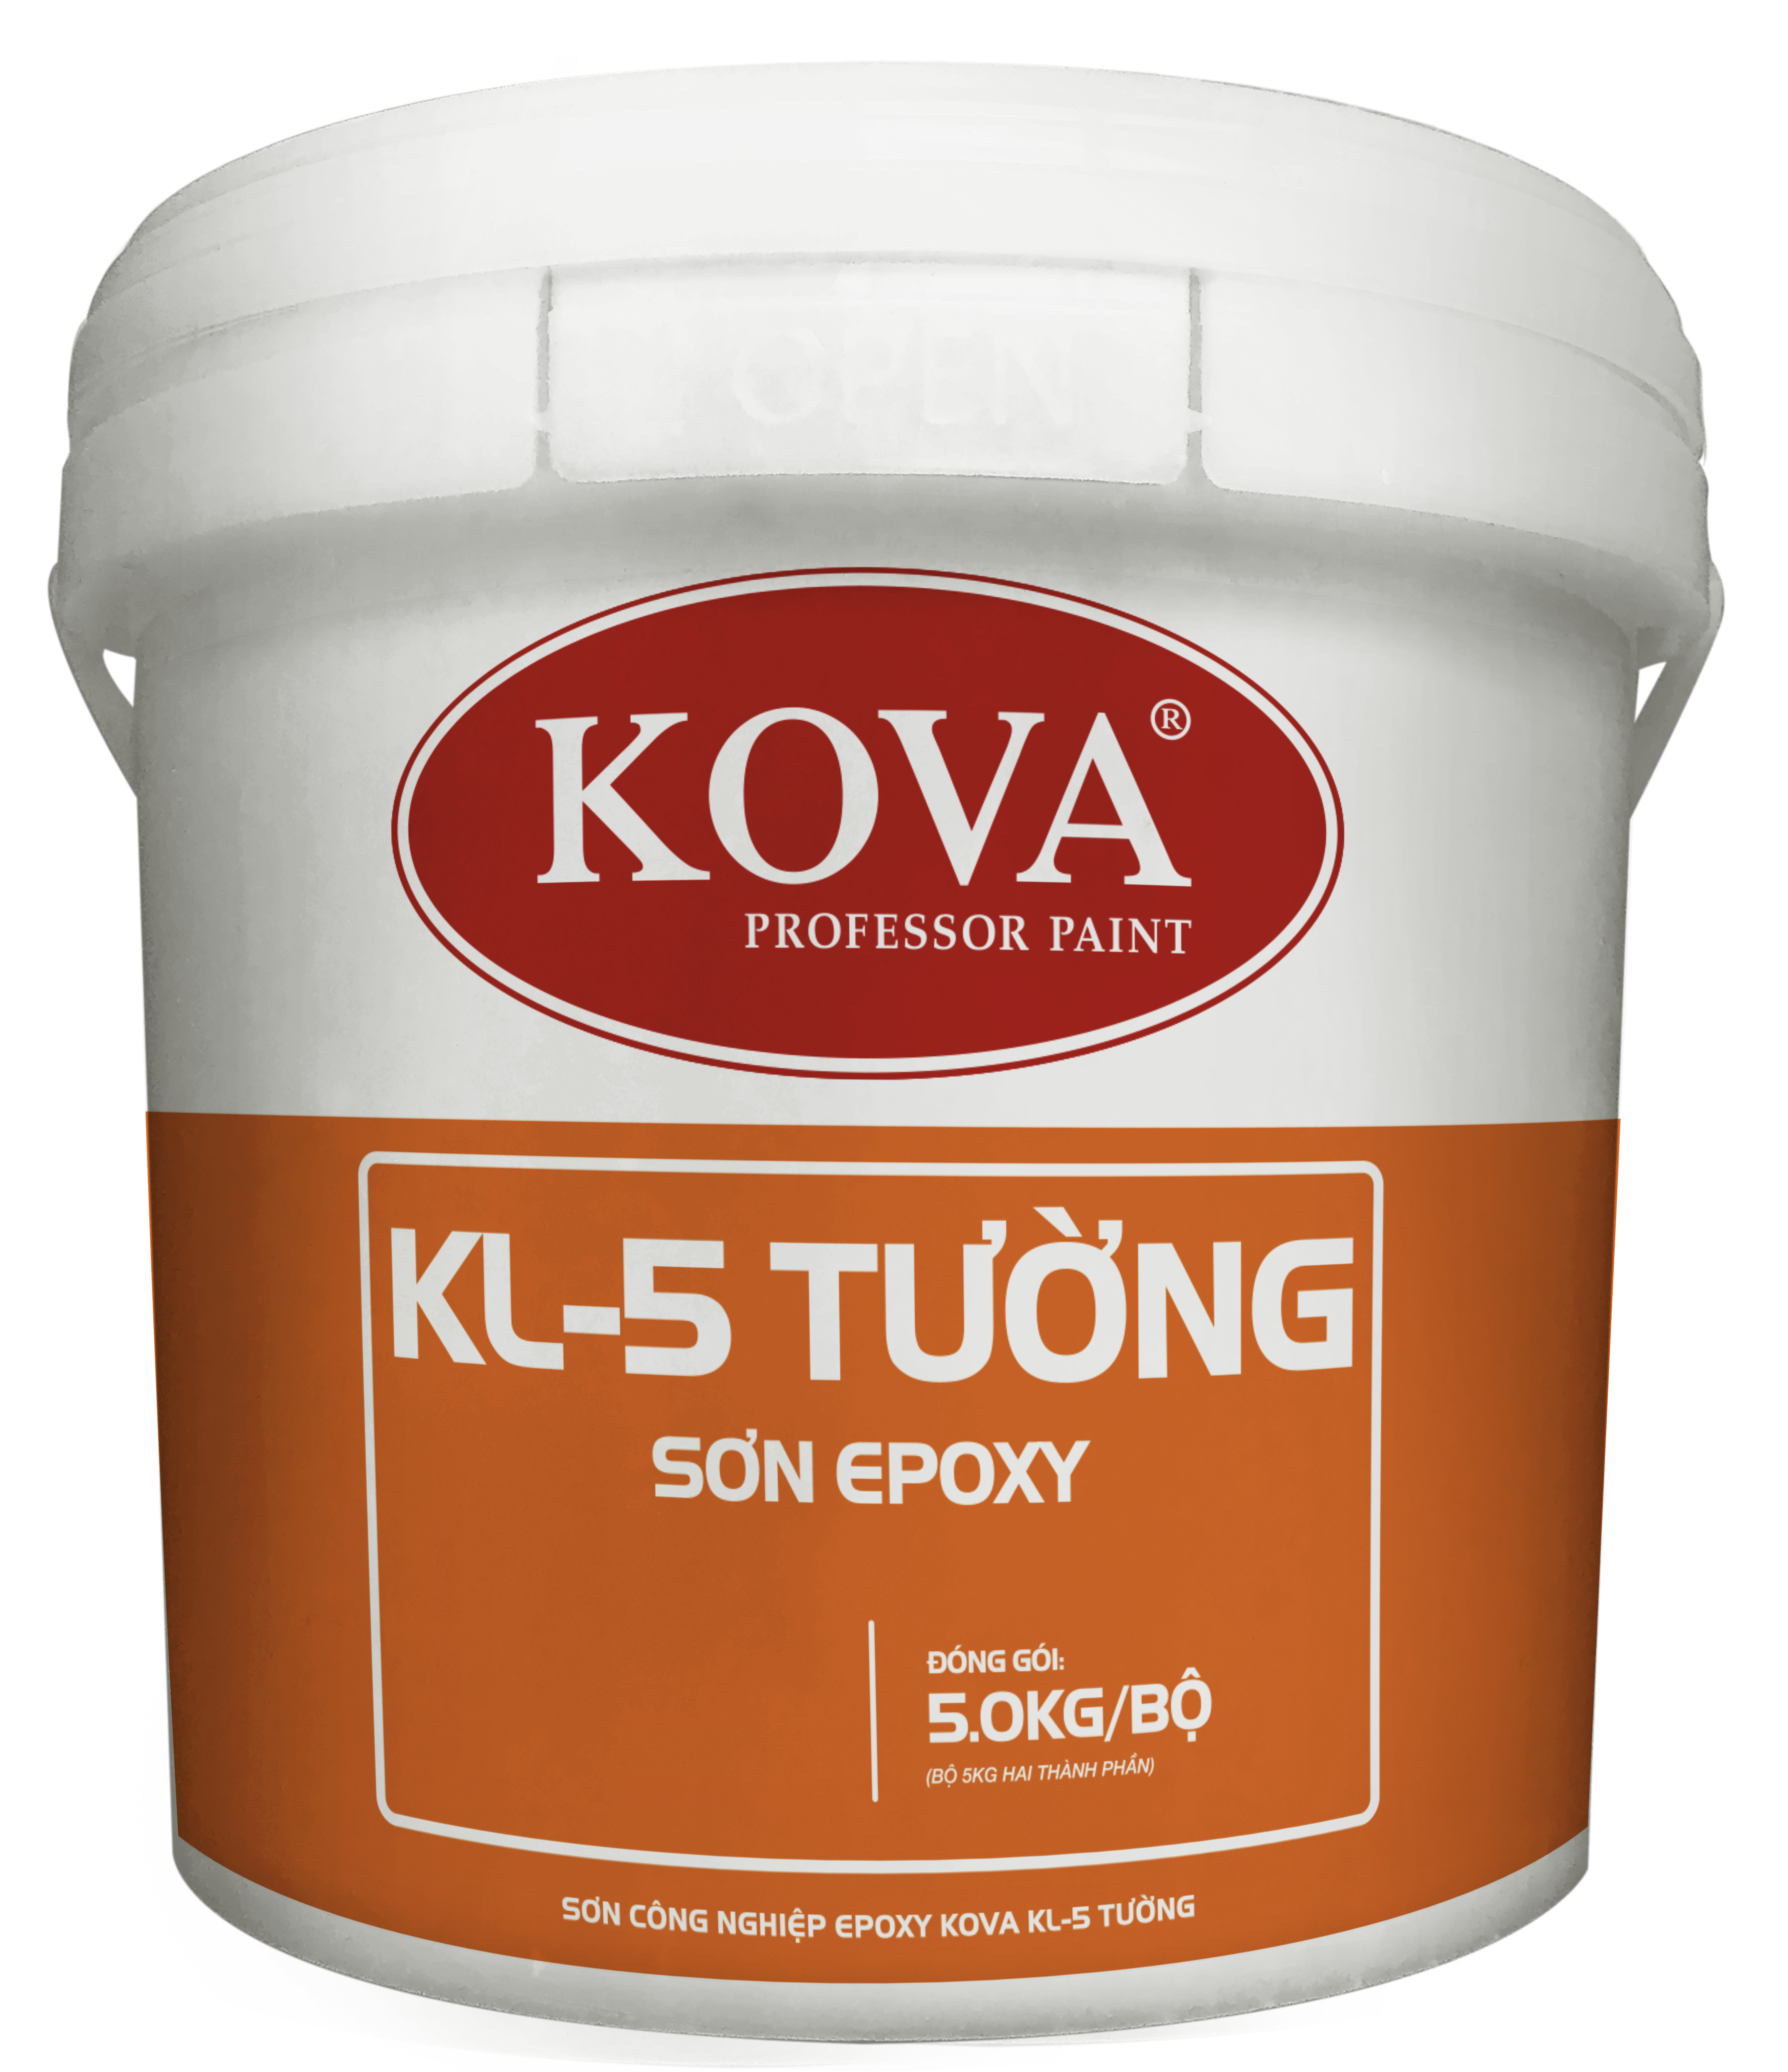 Sơn Kova Epoxy KL-5:
Được chế tạo từ chiết suất cao cấp, Sơn Kova Epoxy KL-5 là sự lựa chọn hoàn hảo cho công trình của bạn. Với khả năng kháng hóa chất vượt trội và độ bền cao, sản phẩm giúp bảo vệ bề mặt sơn tốt hơn bao giờ hết. Xem ảnh để khám phá sản phẩm này.